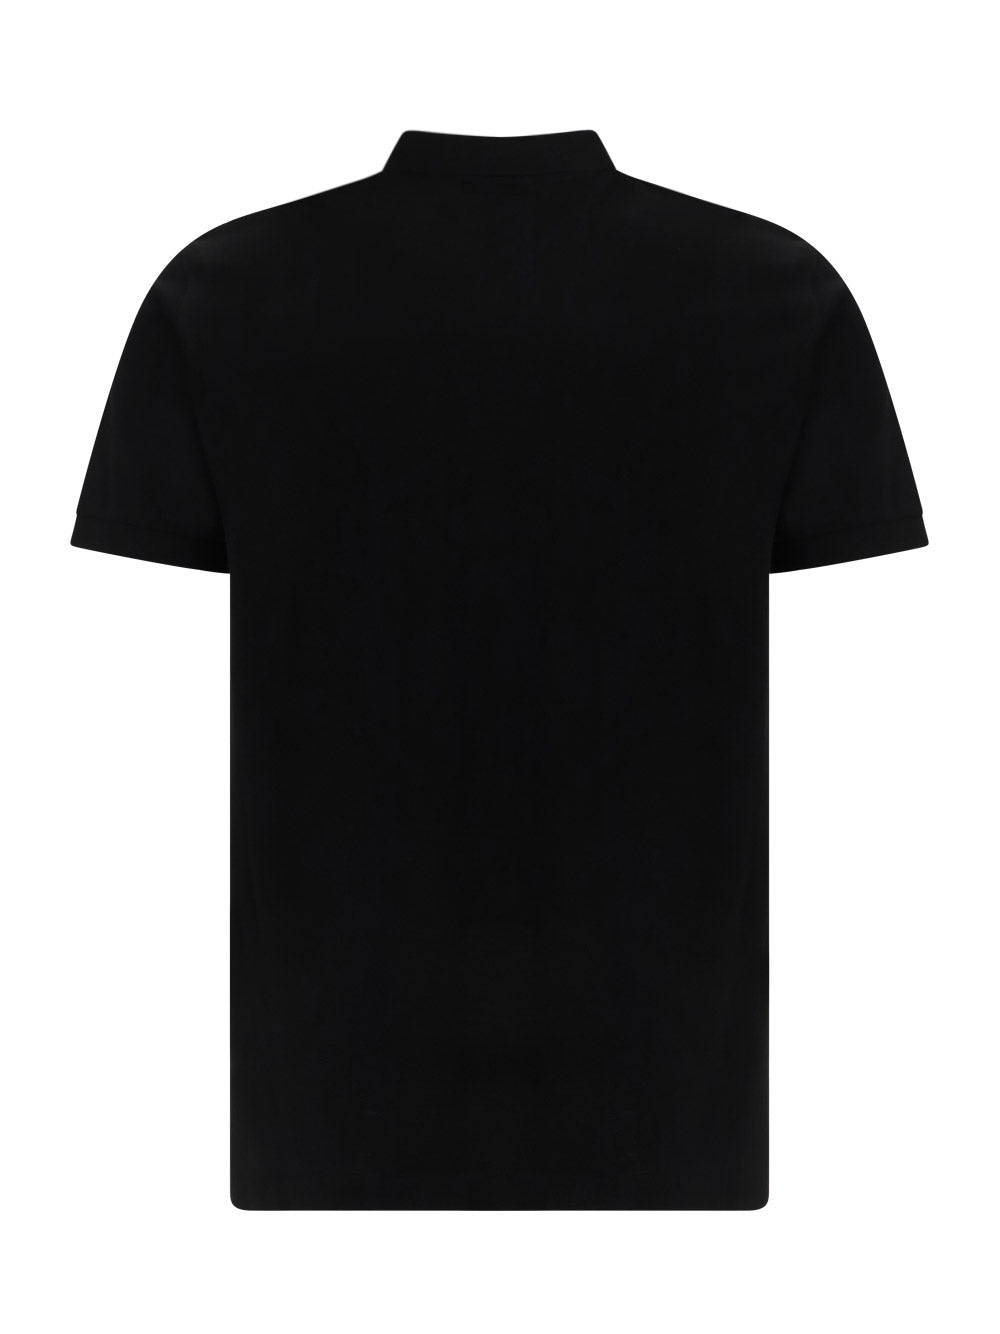 Piqué Polo Shirt - Black